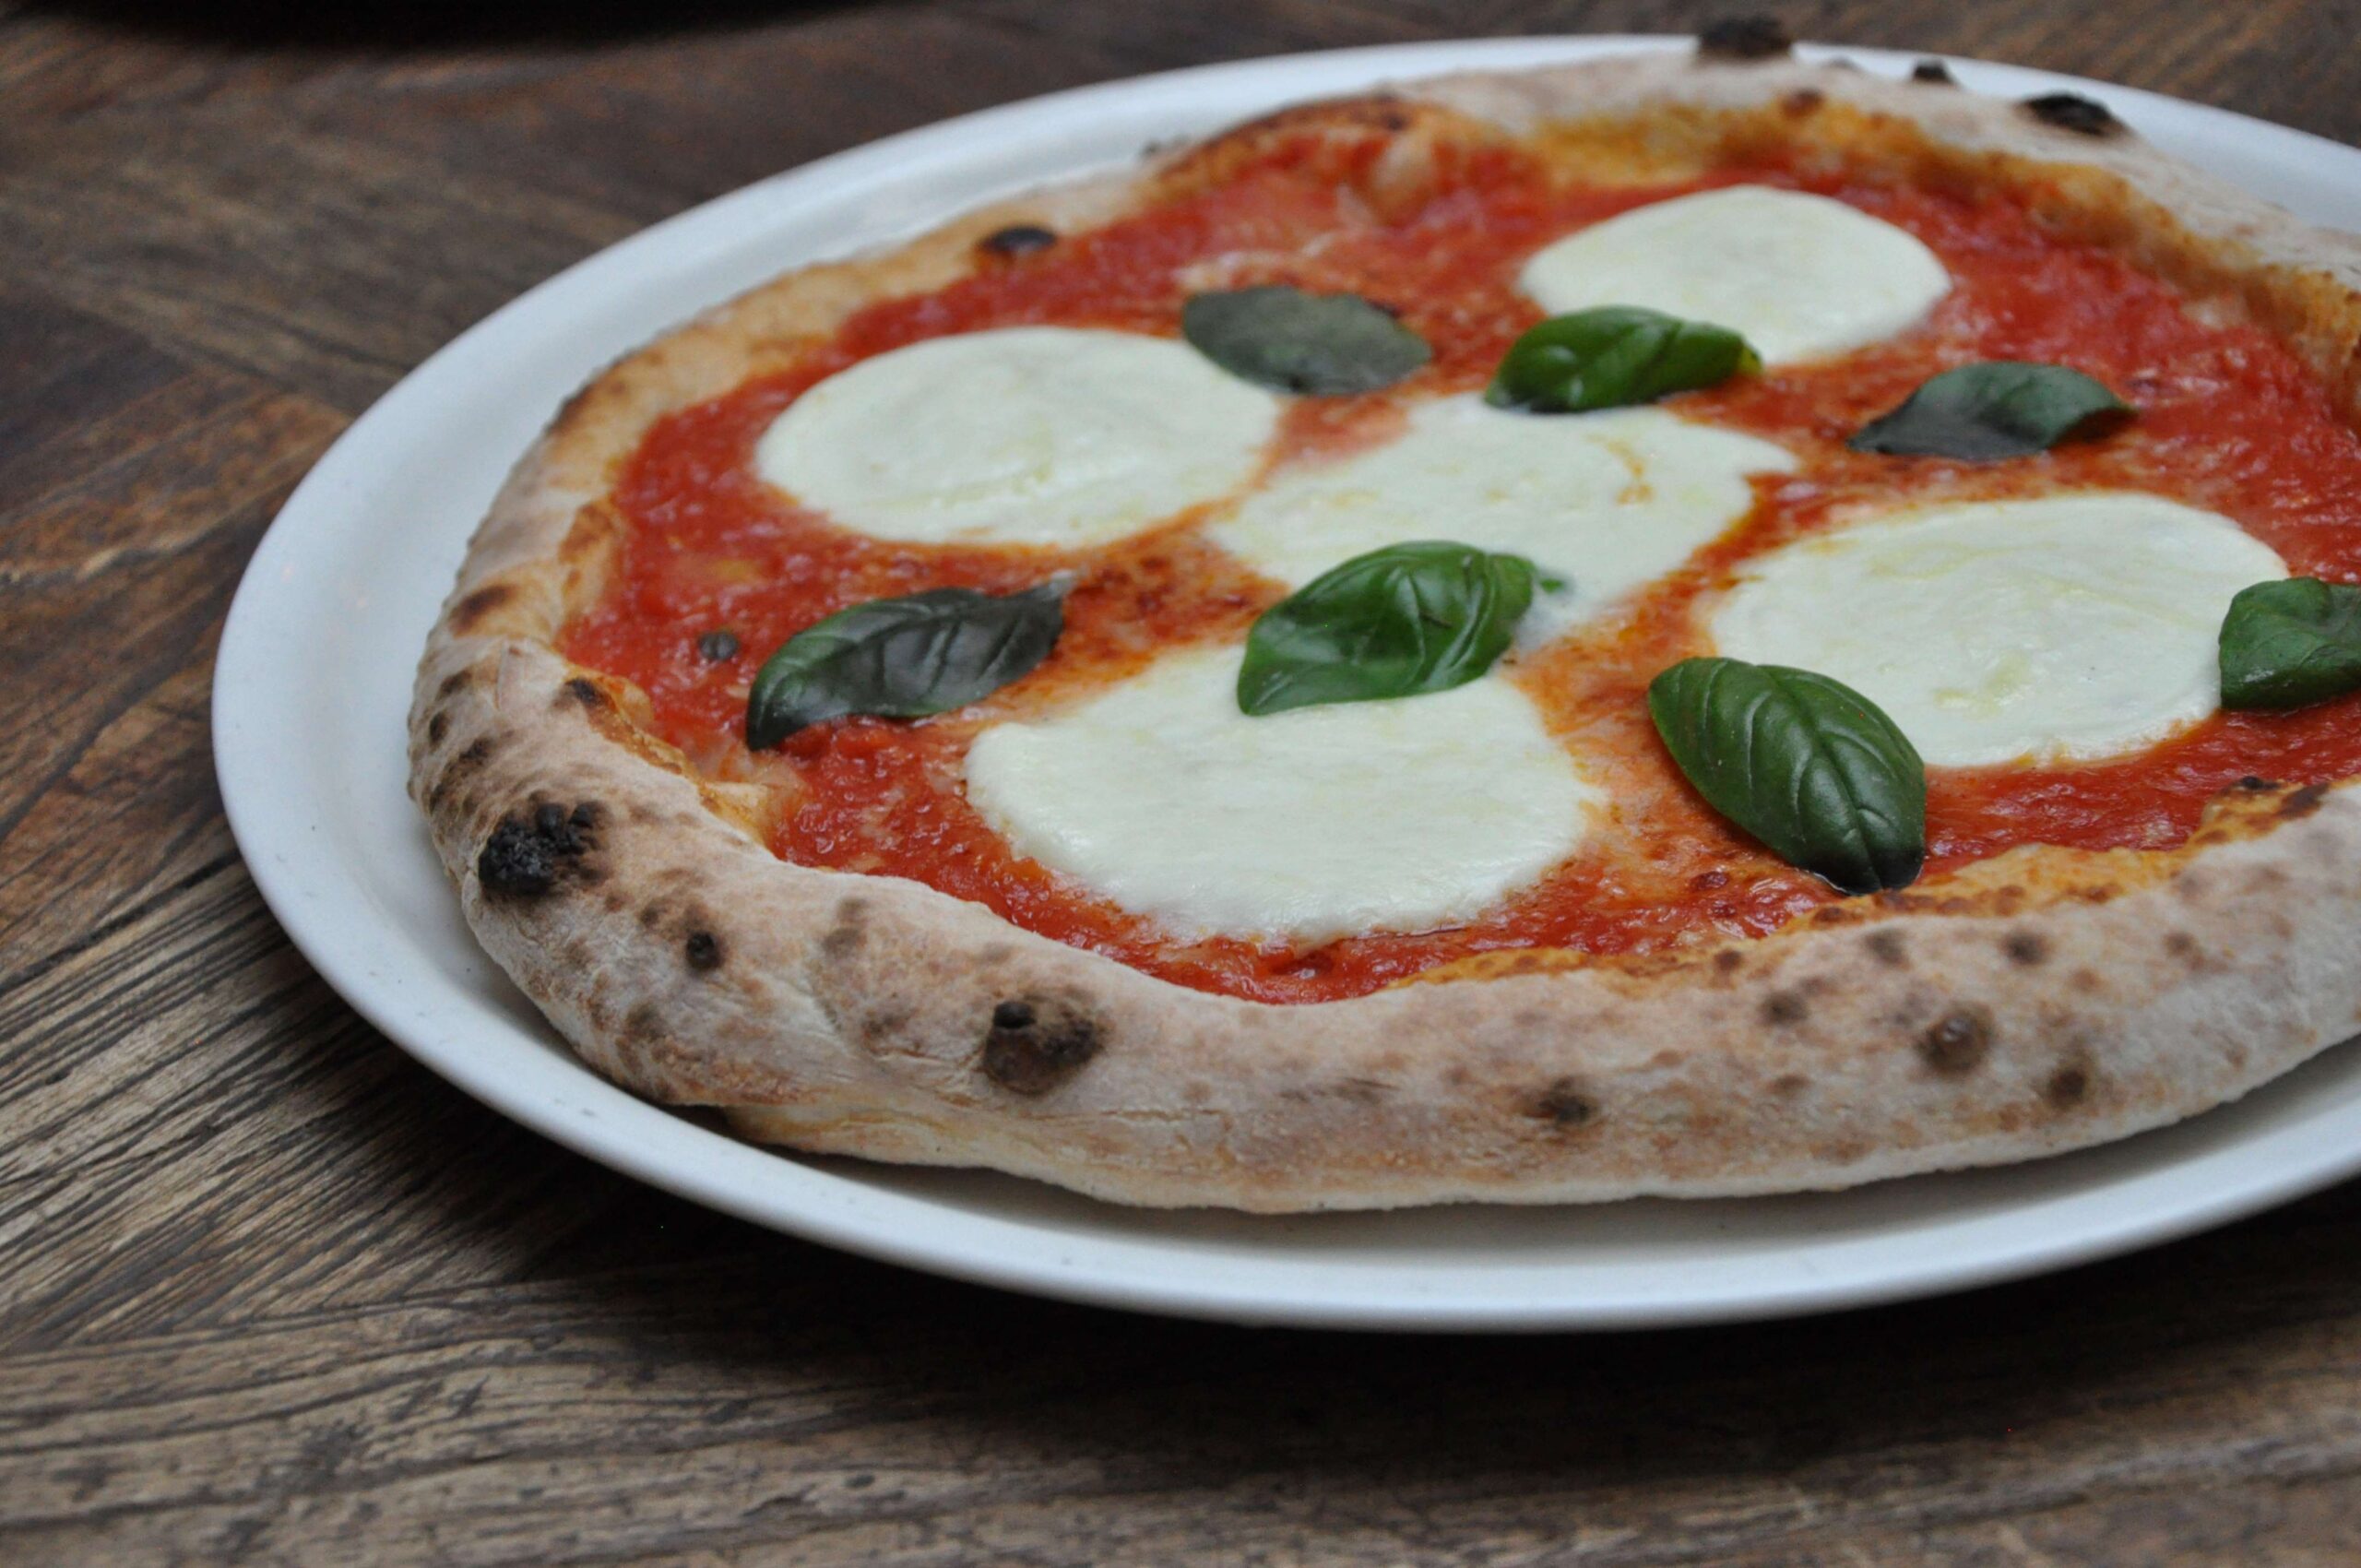 A Settimana della Pizza é uma ótima oportunidade para experimentar pizzas autênticas de todas as regiões da Itália e aprender mais sobre a cultura gastronômica italiana